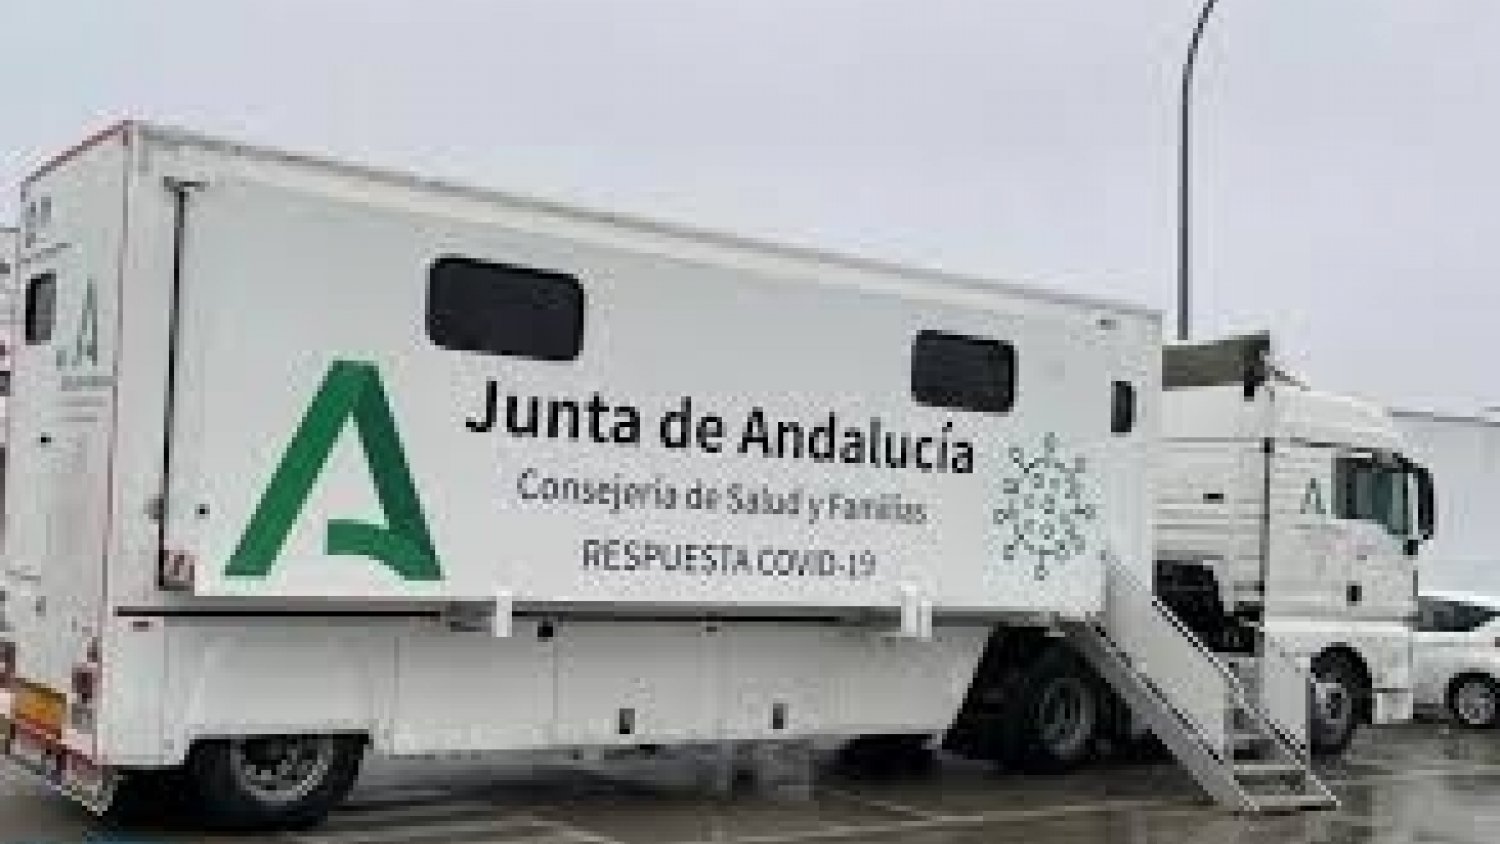 El Comité de Salud realiza nuevos cribados poblacionales en 48 municipios andaluces